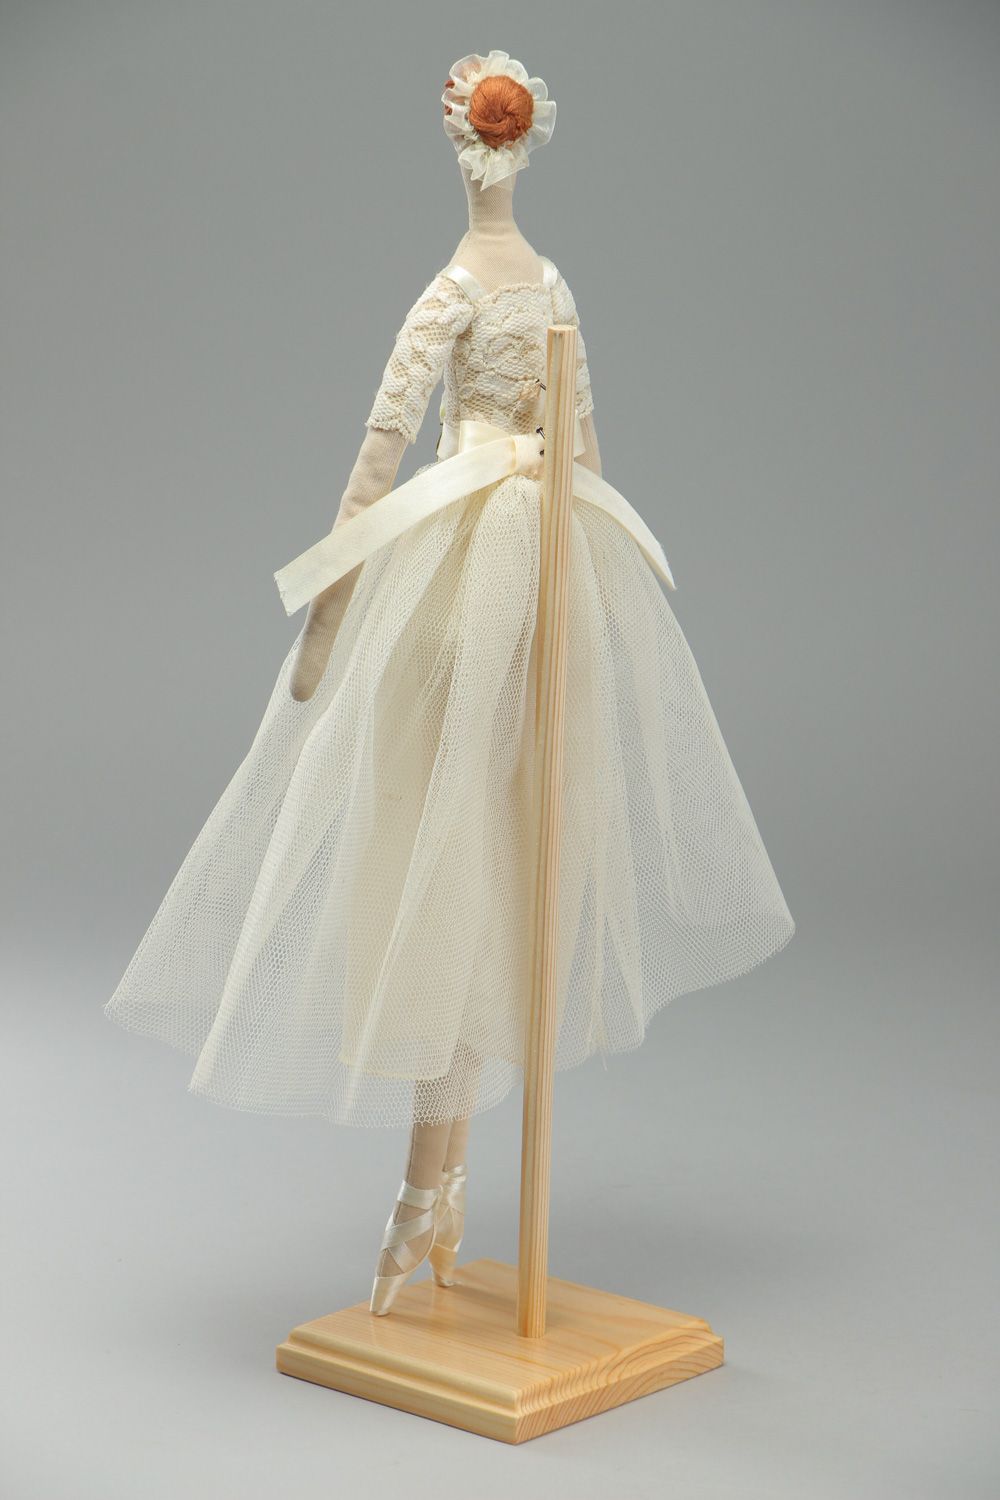 Кукла балерина из ткани ручная работа декоративная для коллекции  фото 3